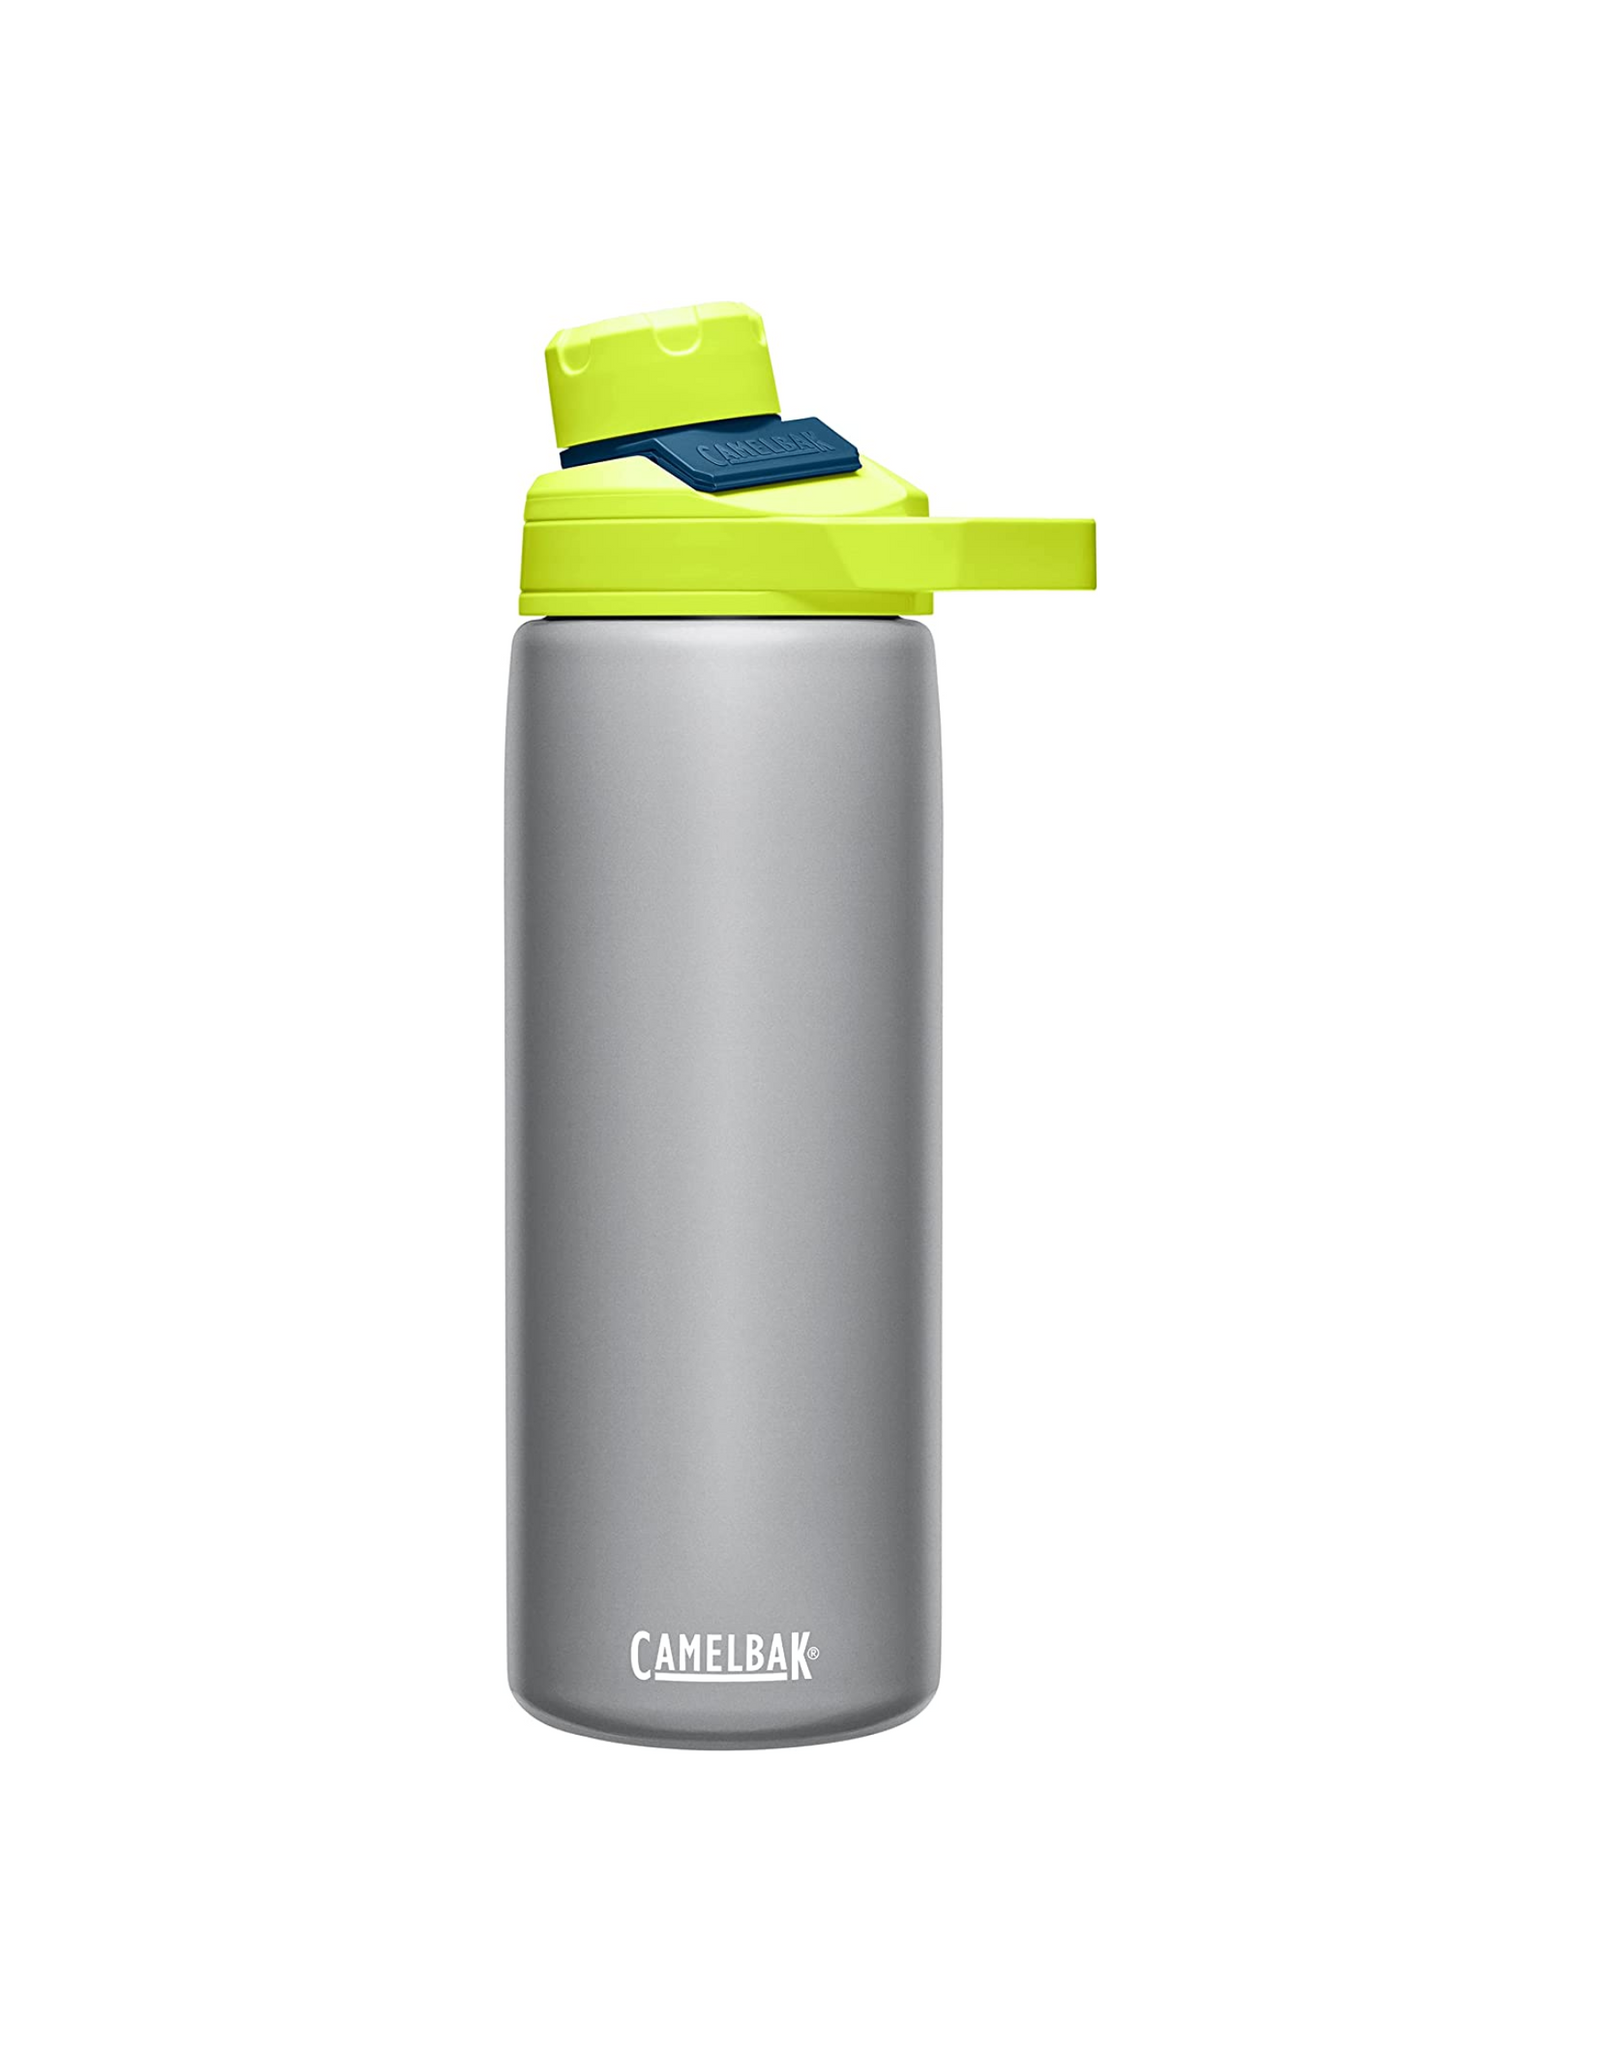 CamelBak Chute Mag Water Bottle, Insulated Stainless Steel, 20 oz, Trailblazer Gray